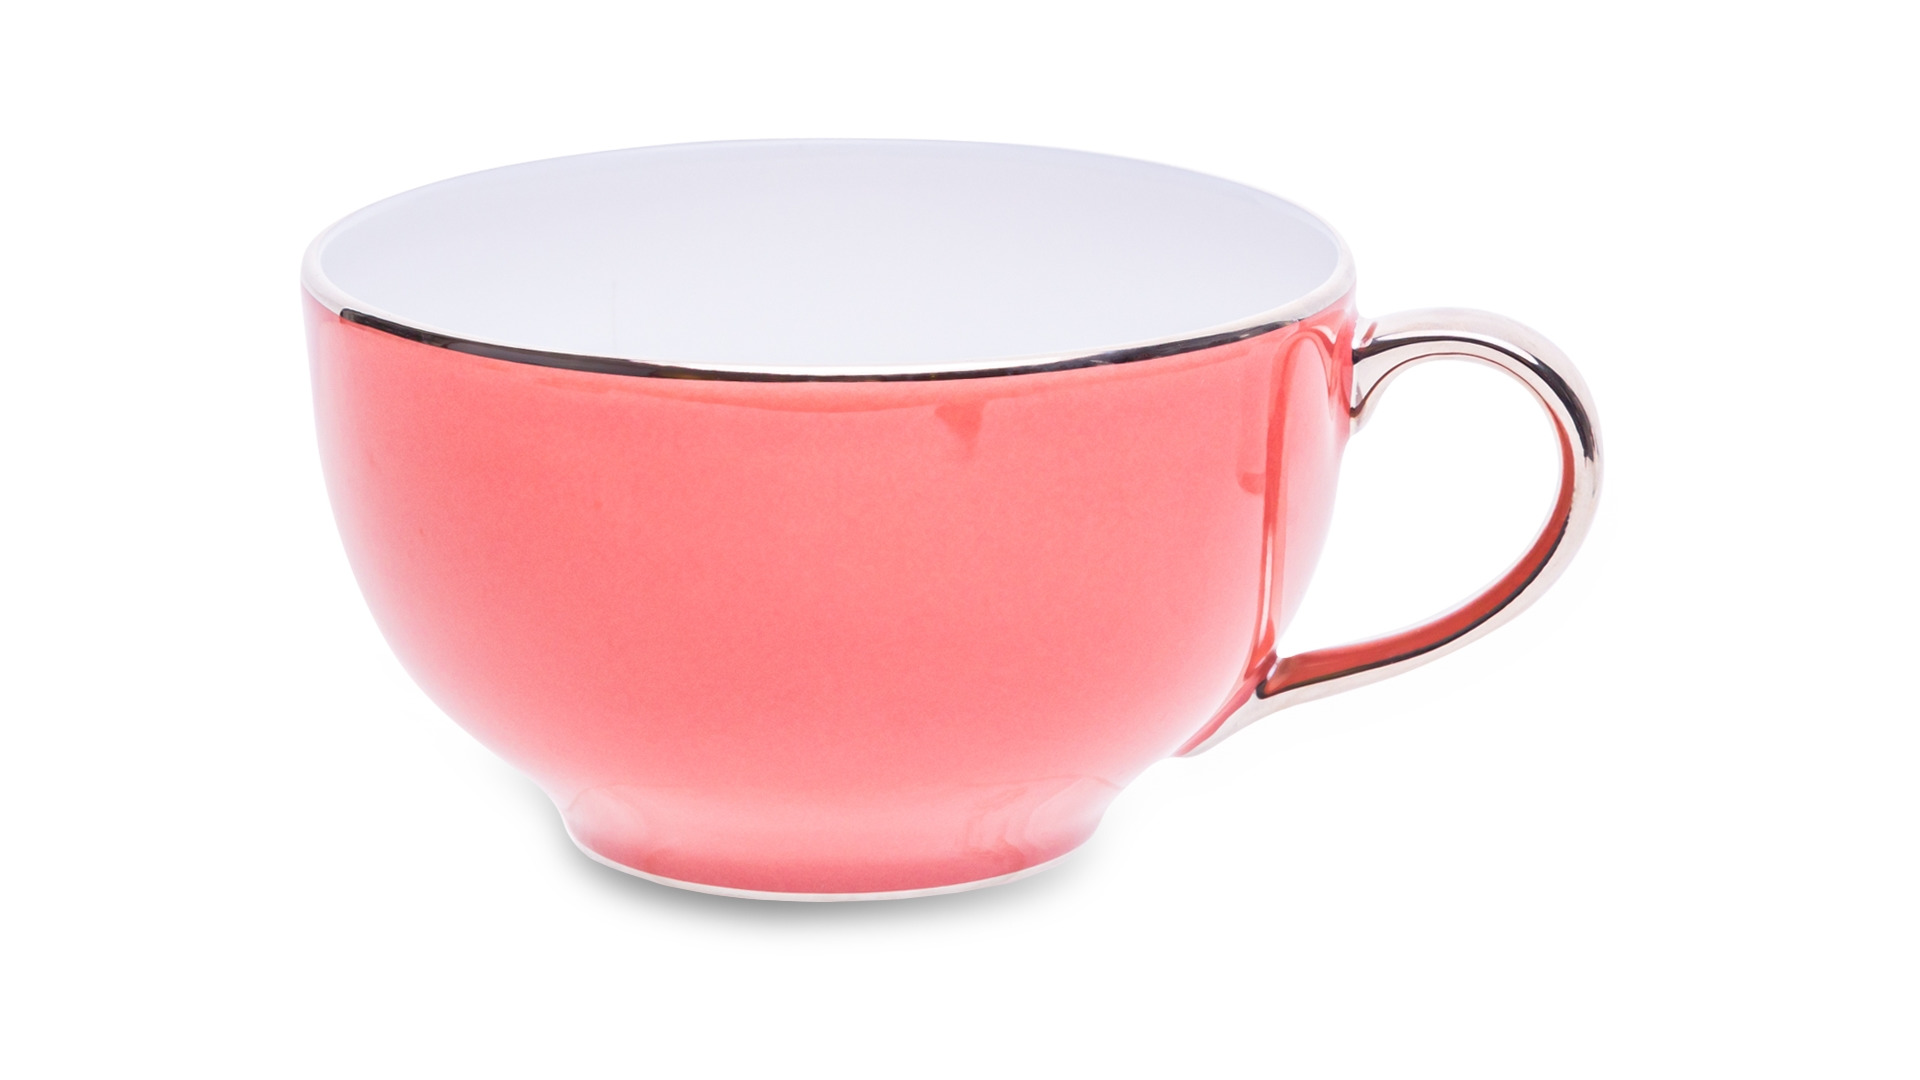 Чашка чайная с блюдцем Legle Под солнцем 280 мл, фарфор, розовая, платиновый кант